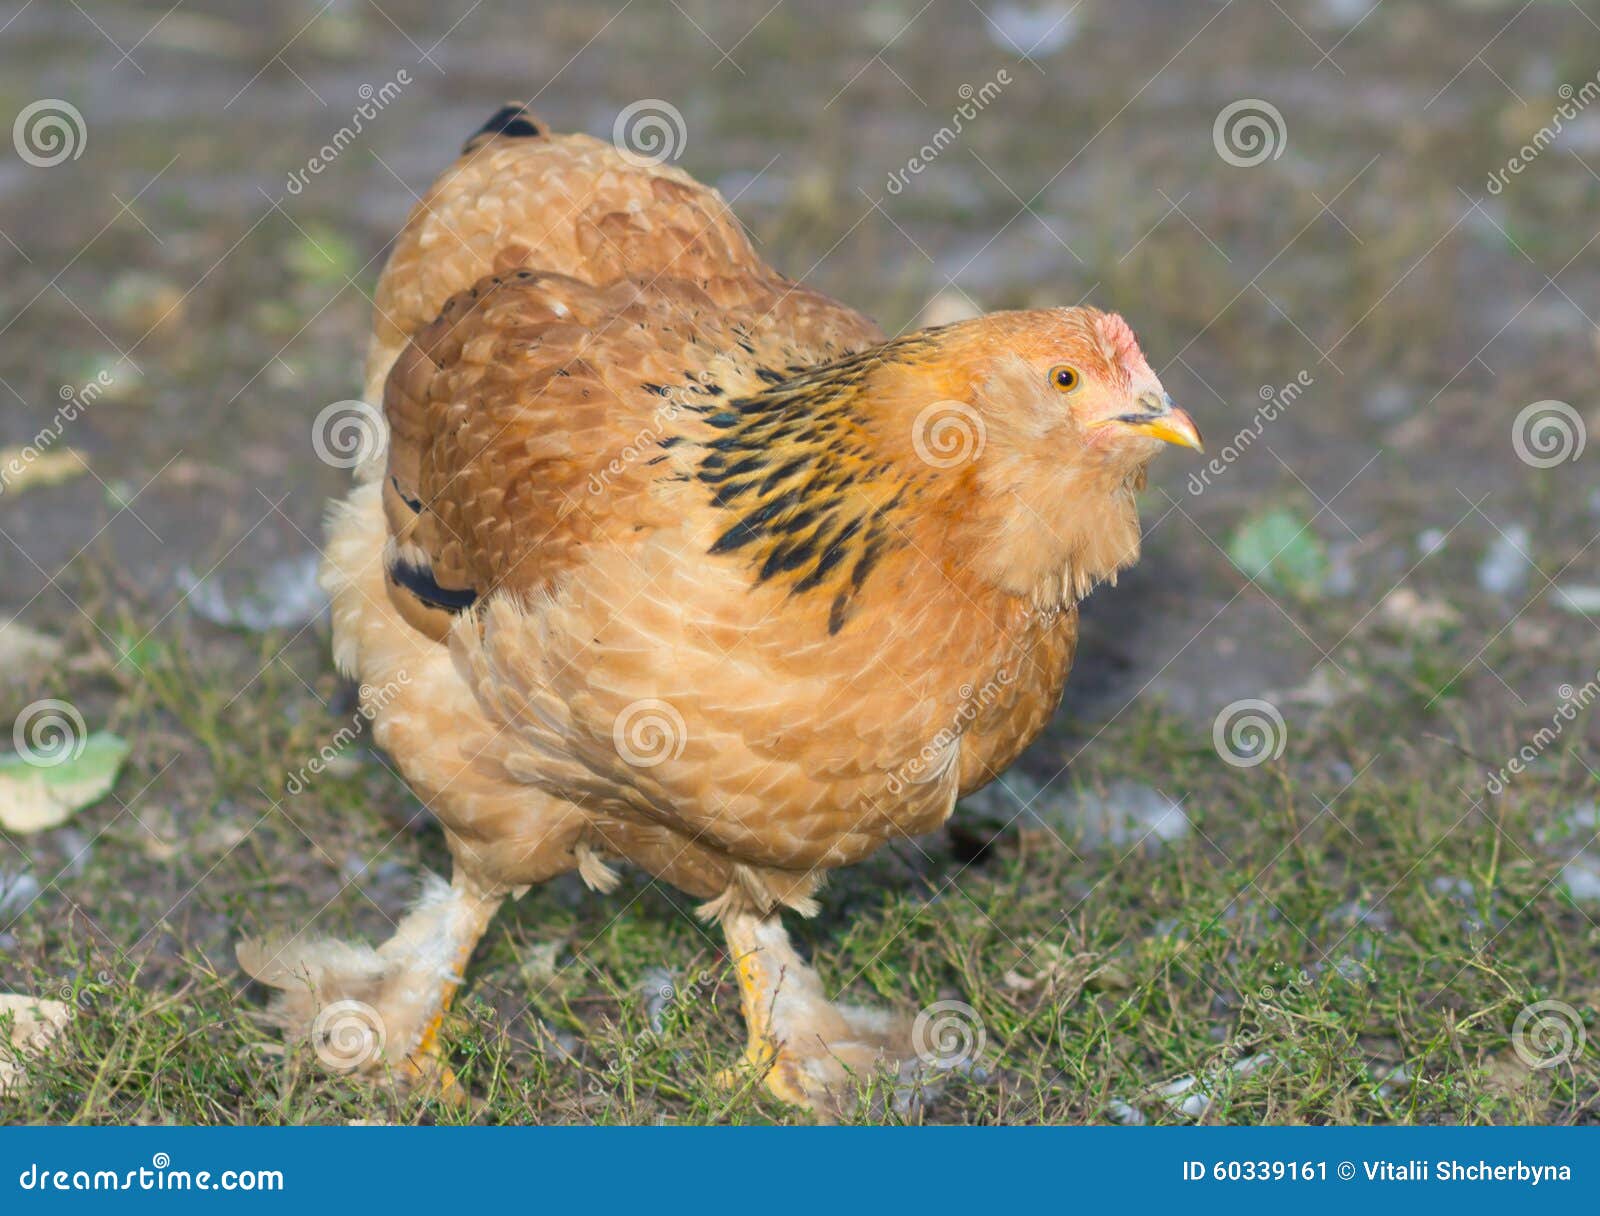 Курица между ног. Цыплята кур с мохнатыми ногами. Куры с волосатыми лапами. Куры с волосатыми ногпсм. Цыплята Доминант с мохнатыми ножками.